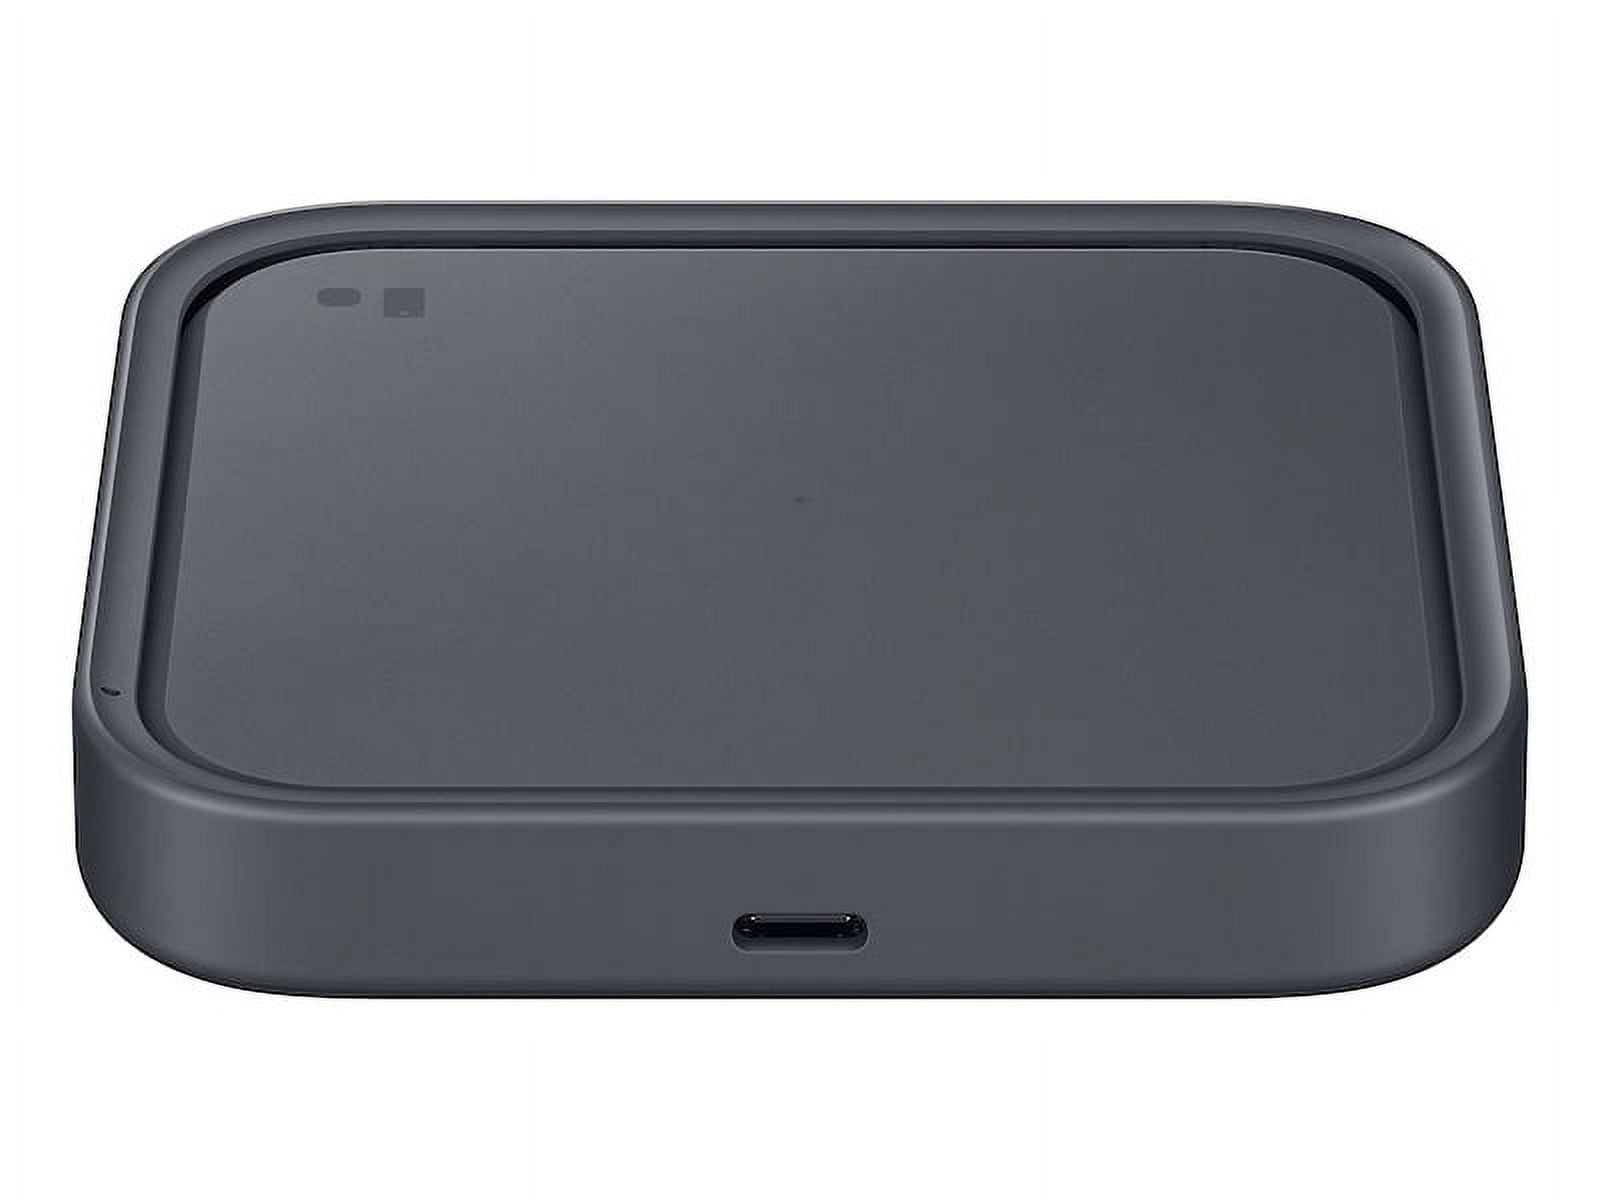 Cargador USB-C Belkin de 20 W máx. para iPad, iPhone y otros smartphones -  Cargador de teléfono - LDLC